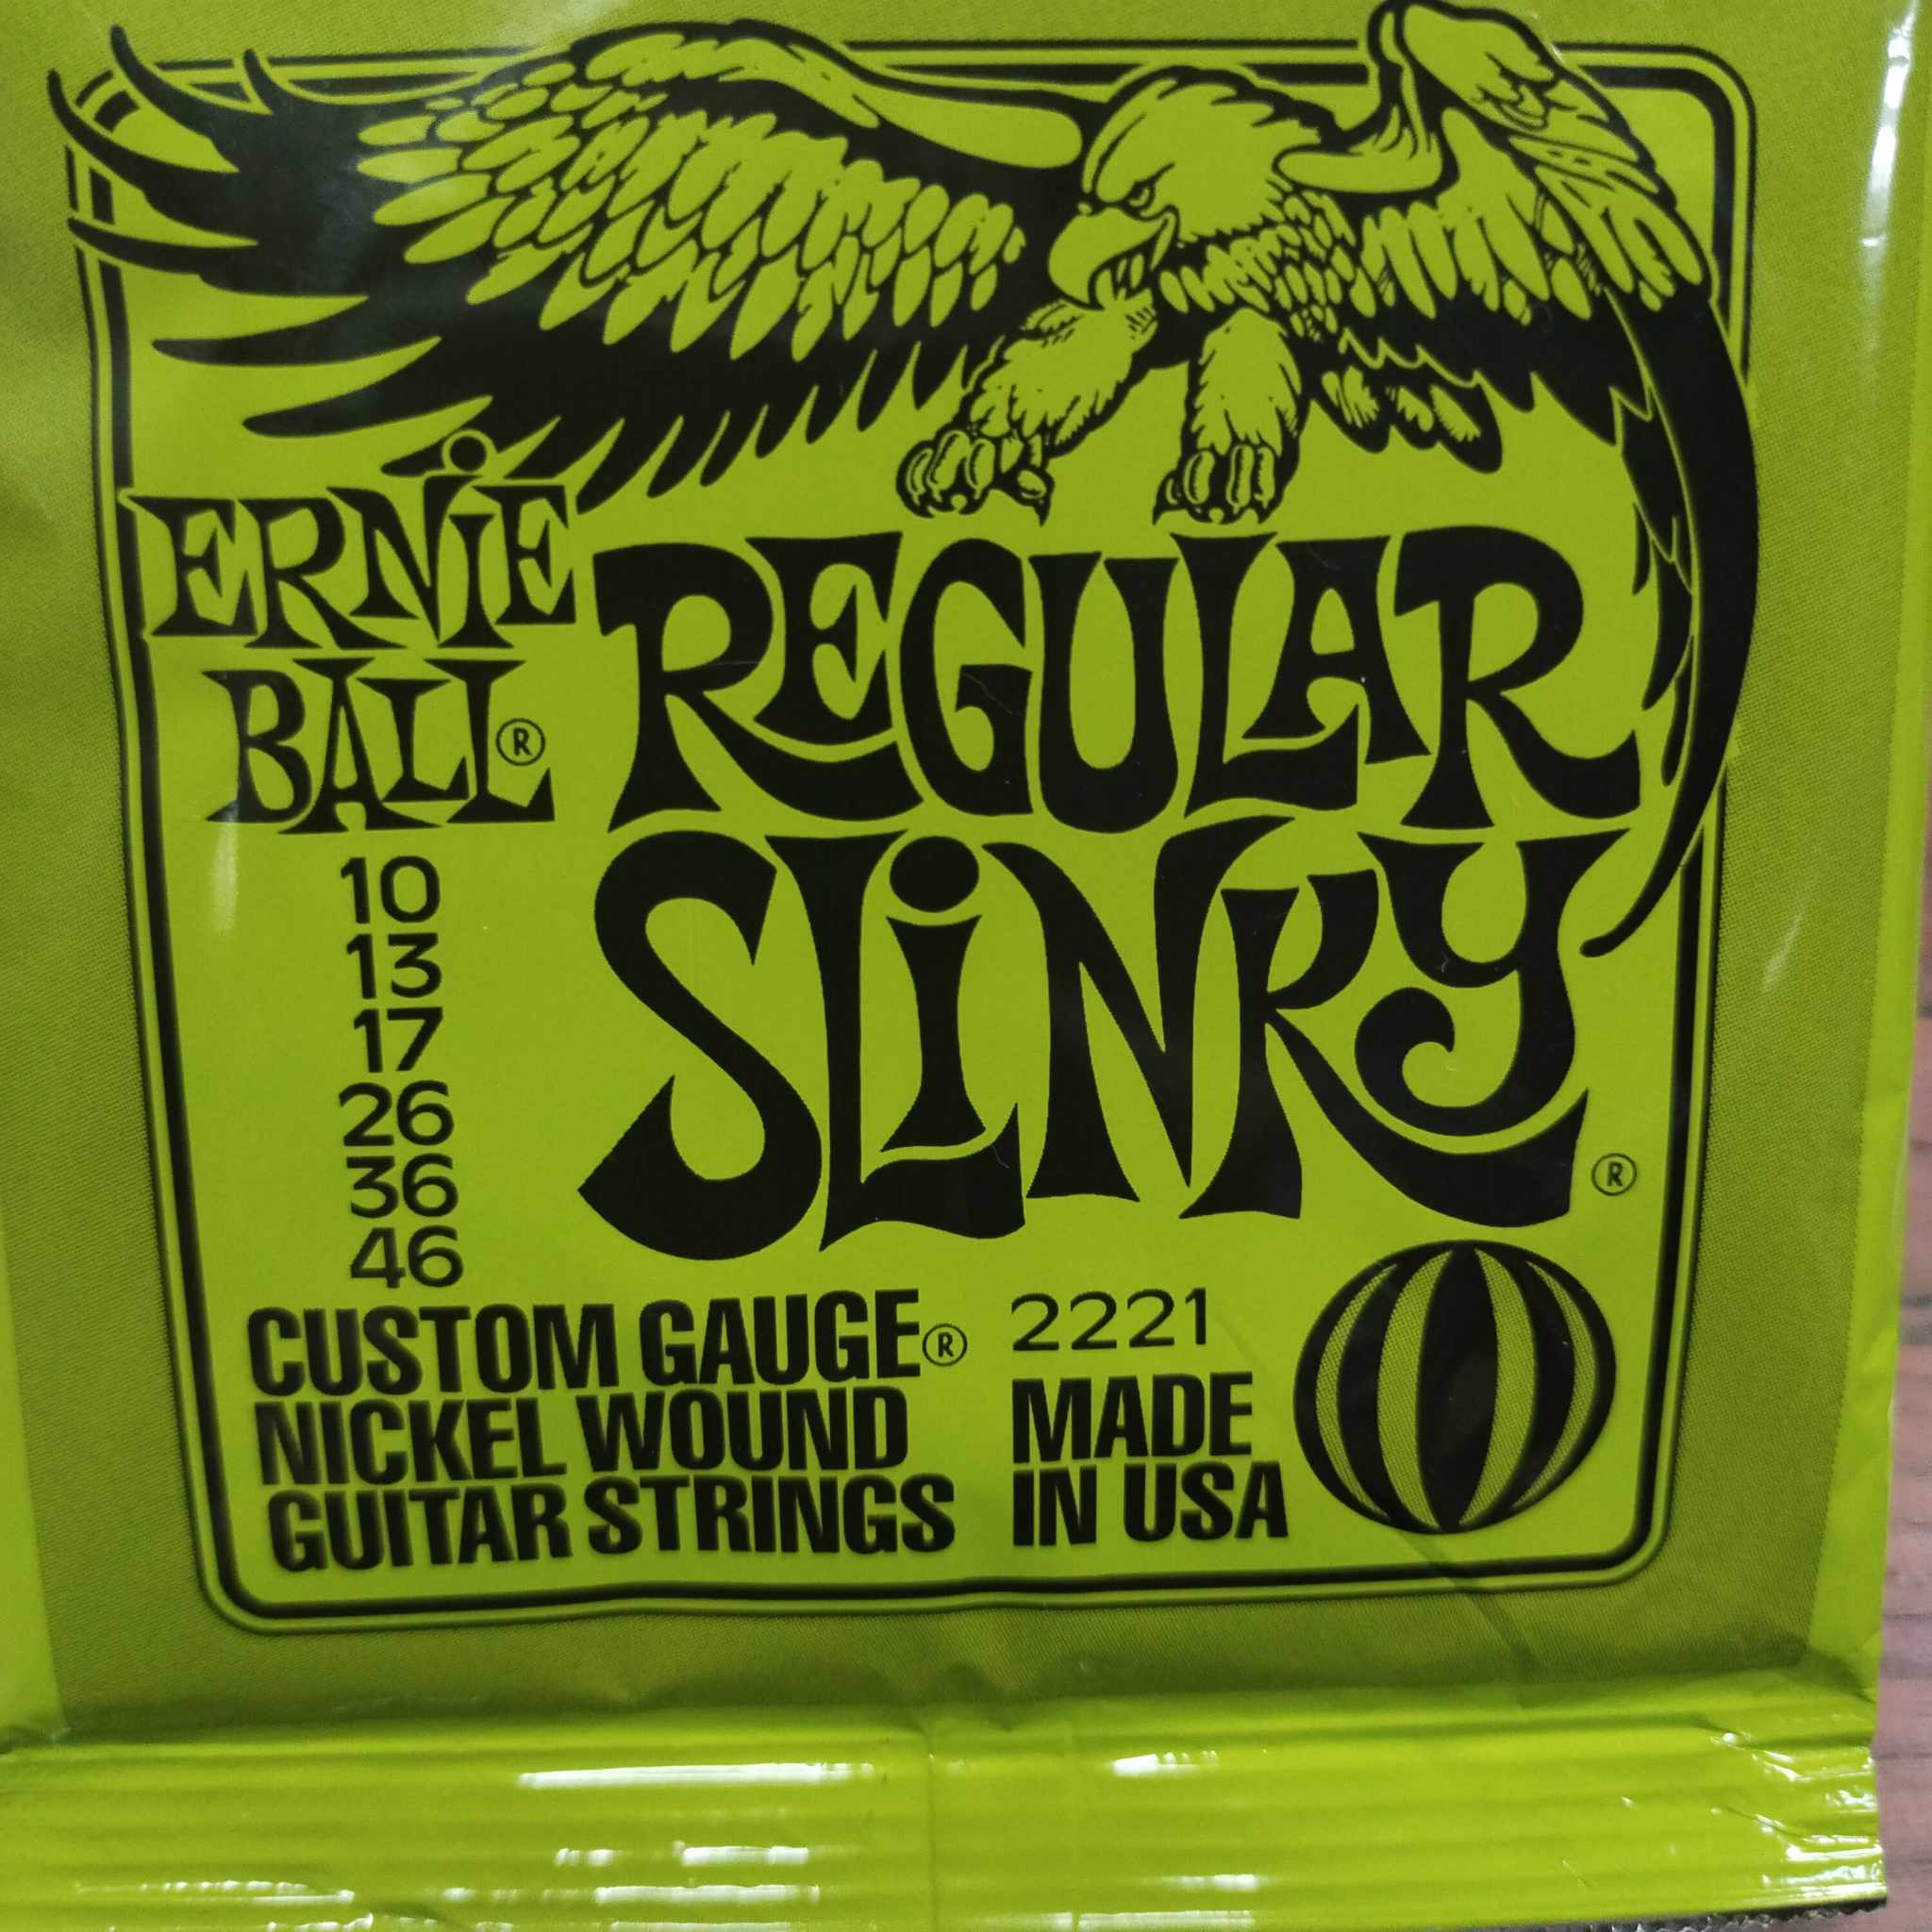 Ernie Ball 2221 Regular Slinky Nickel Wound Electric Guitar Strings -  .010-.046 (12-pack)